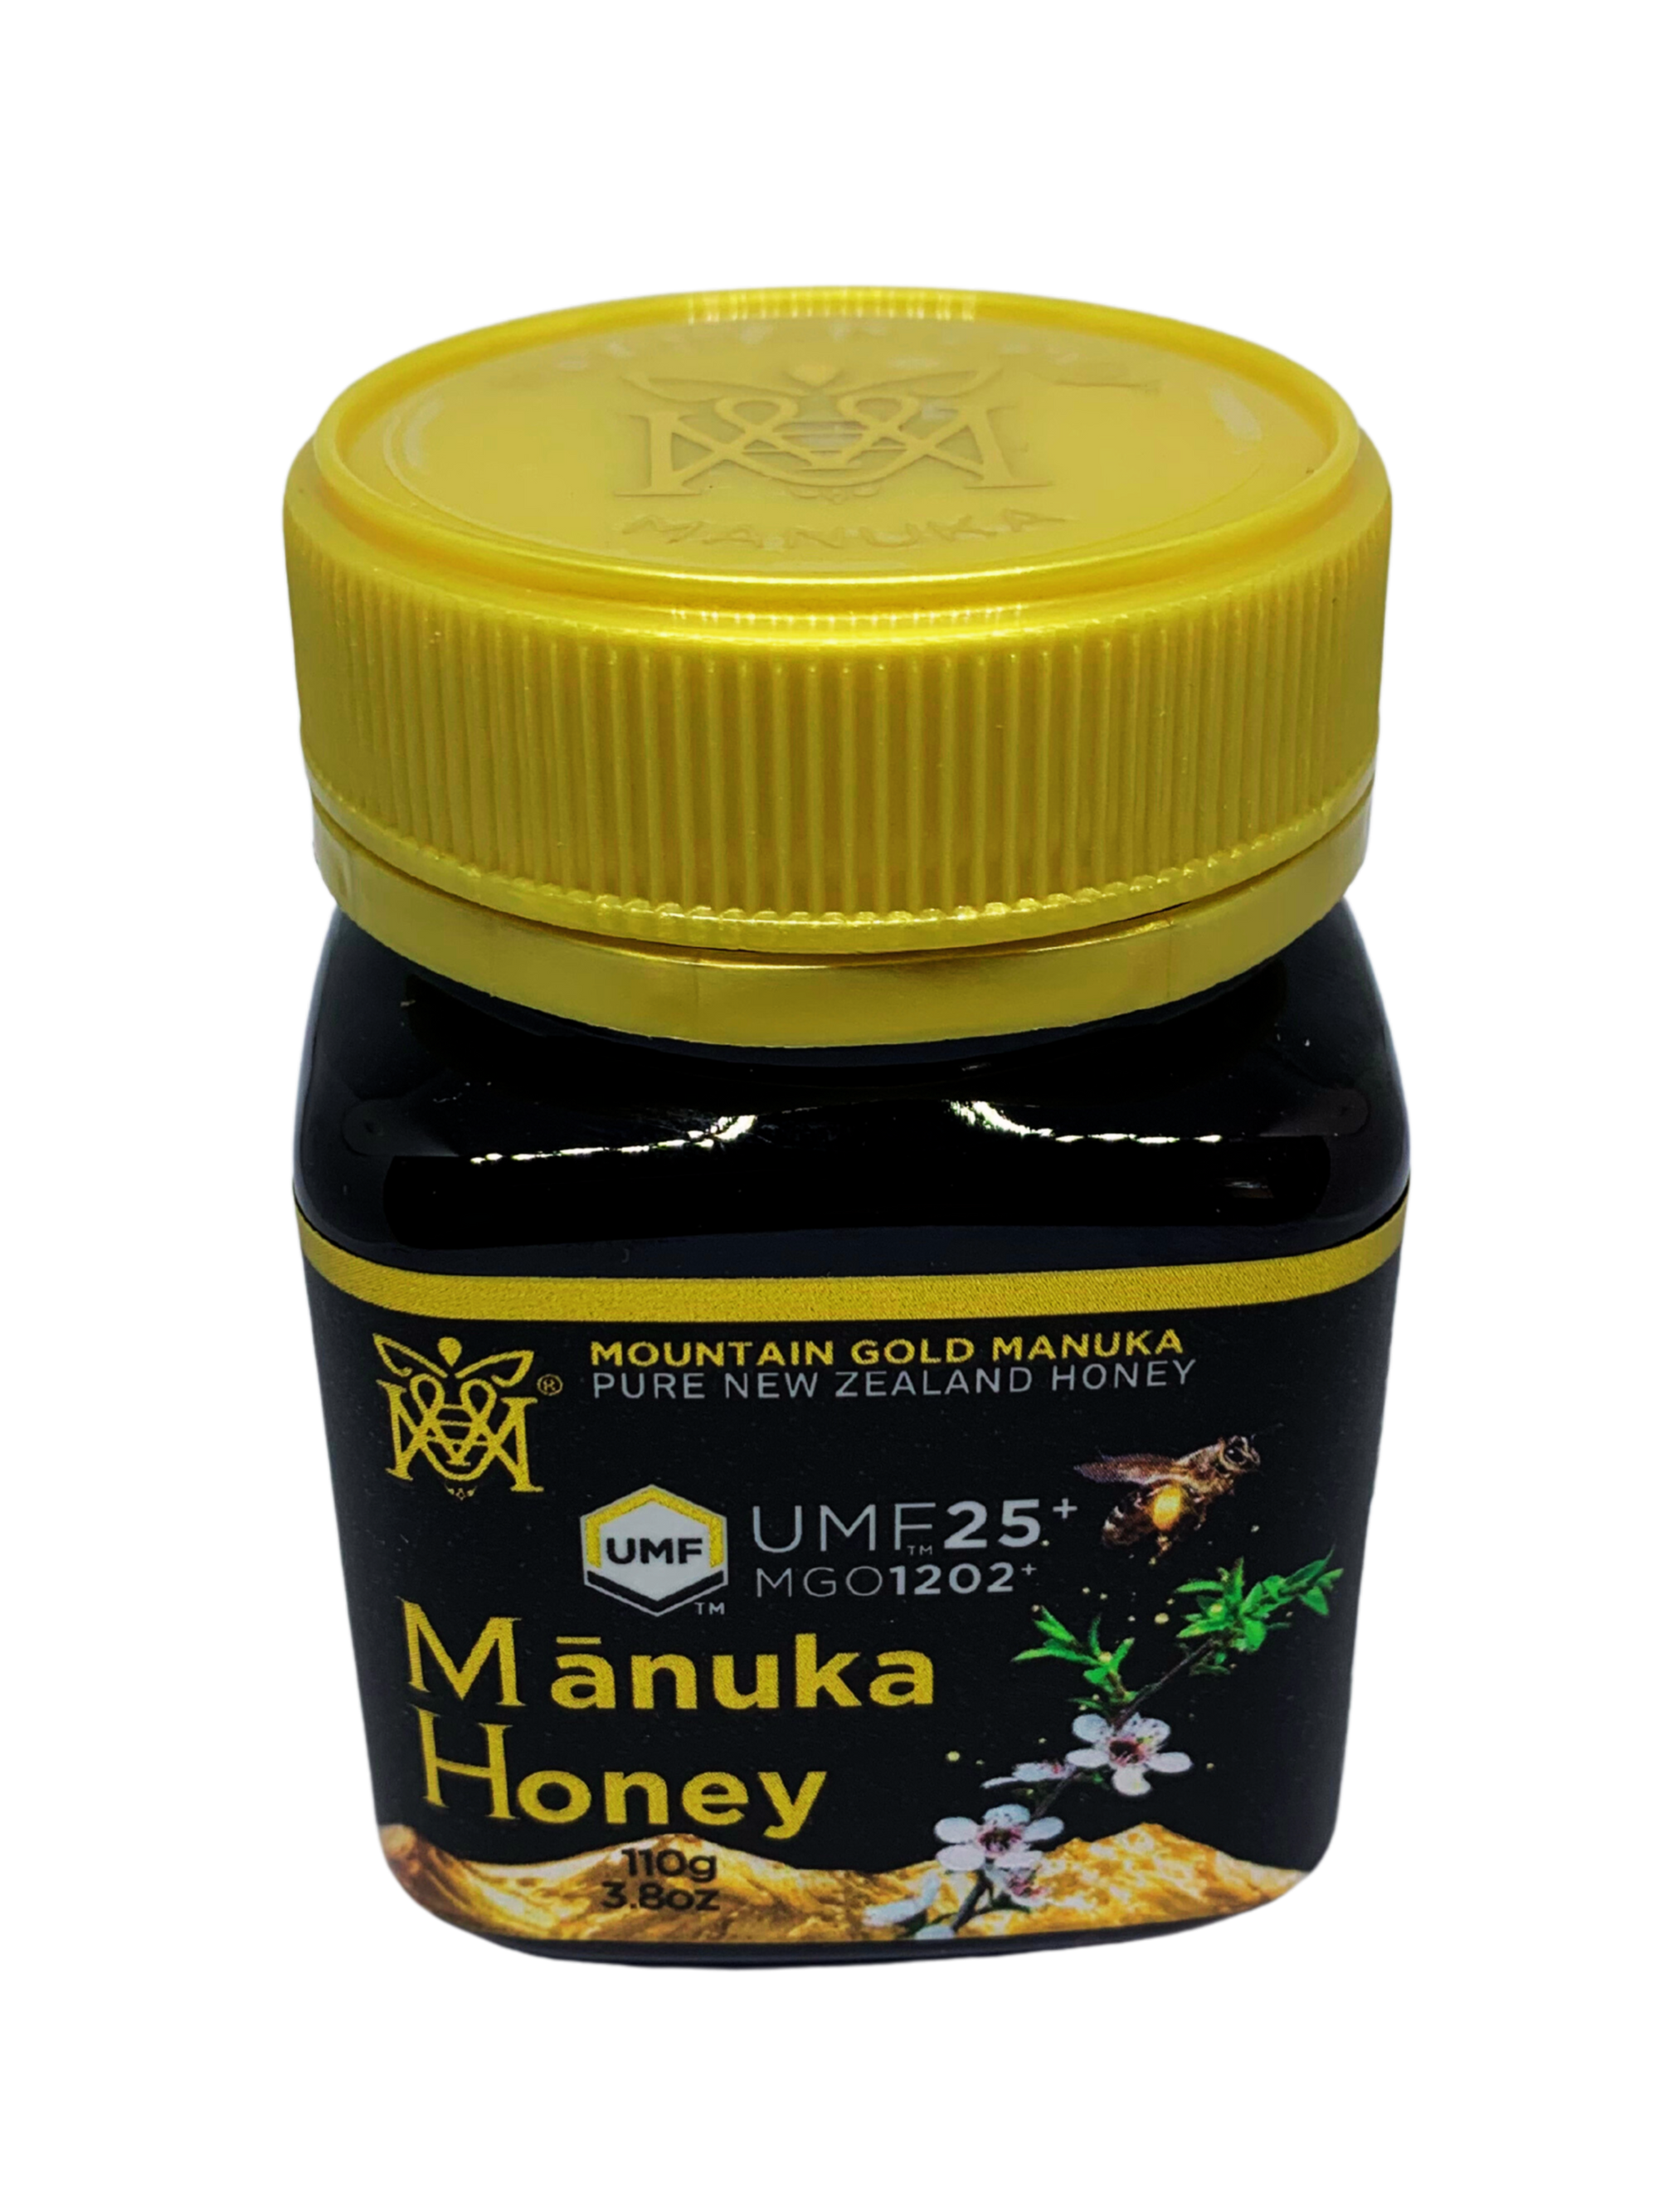 Mountain Gold Manuka Honey UMF25+ MGO 1202+